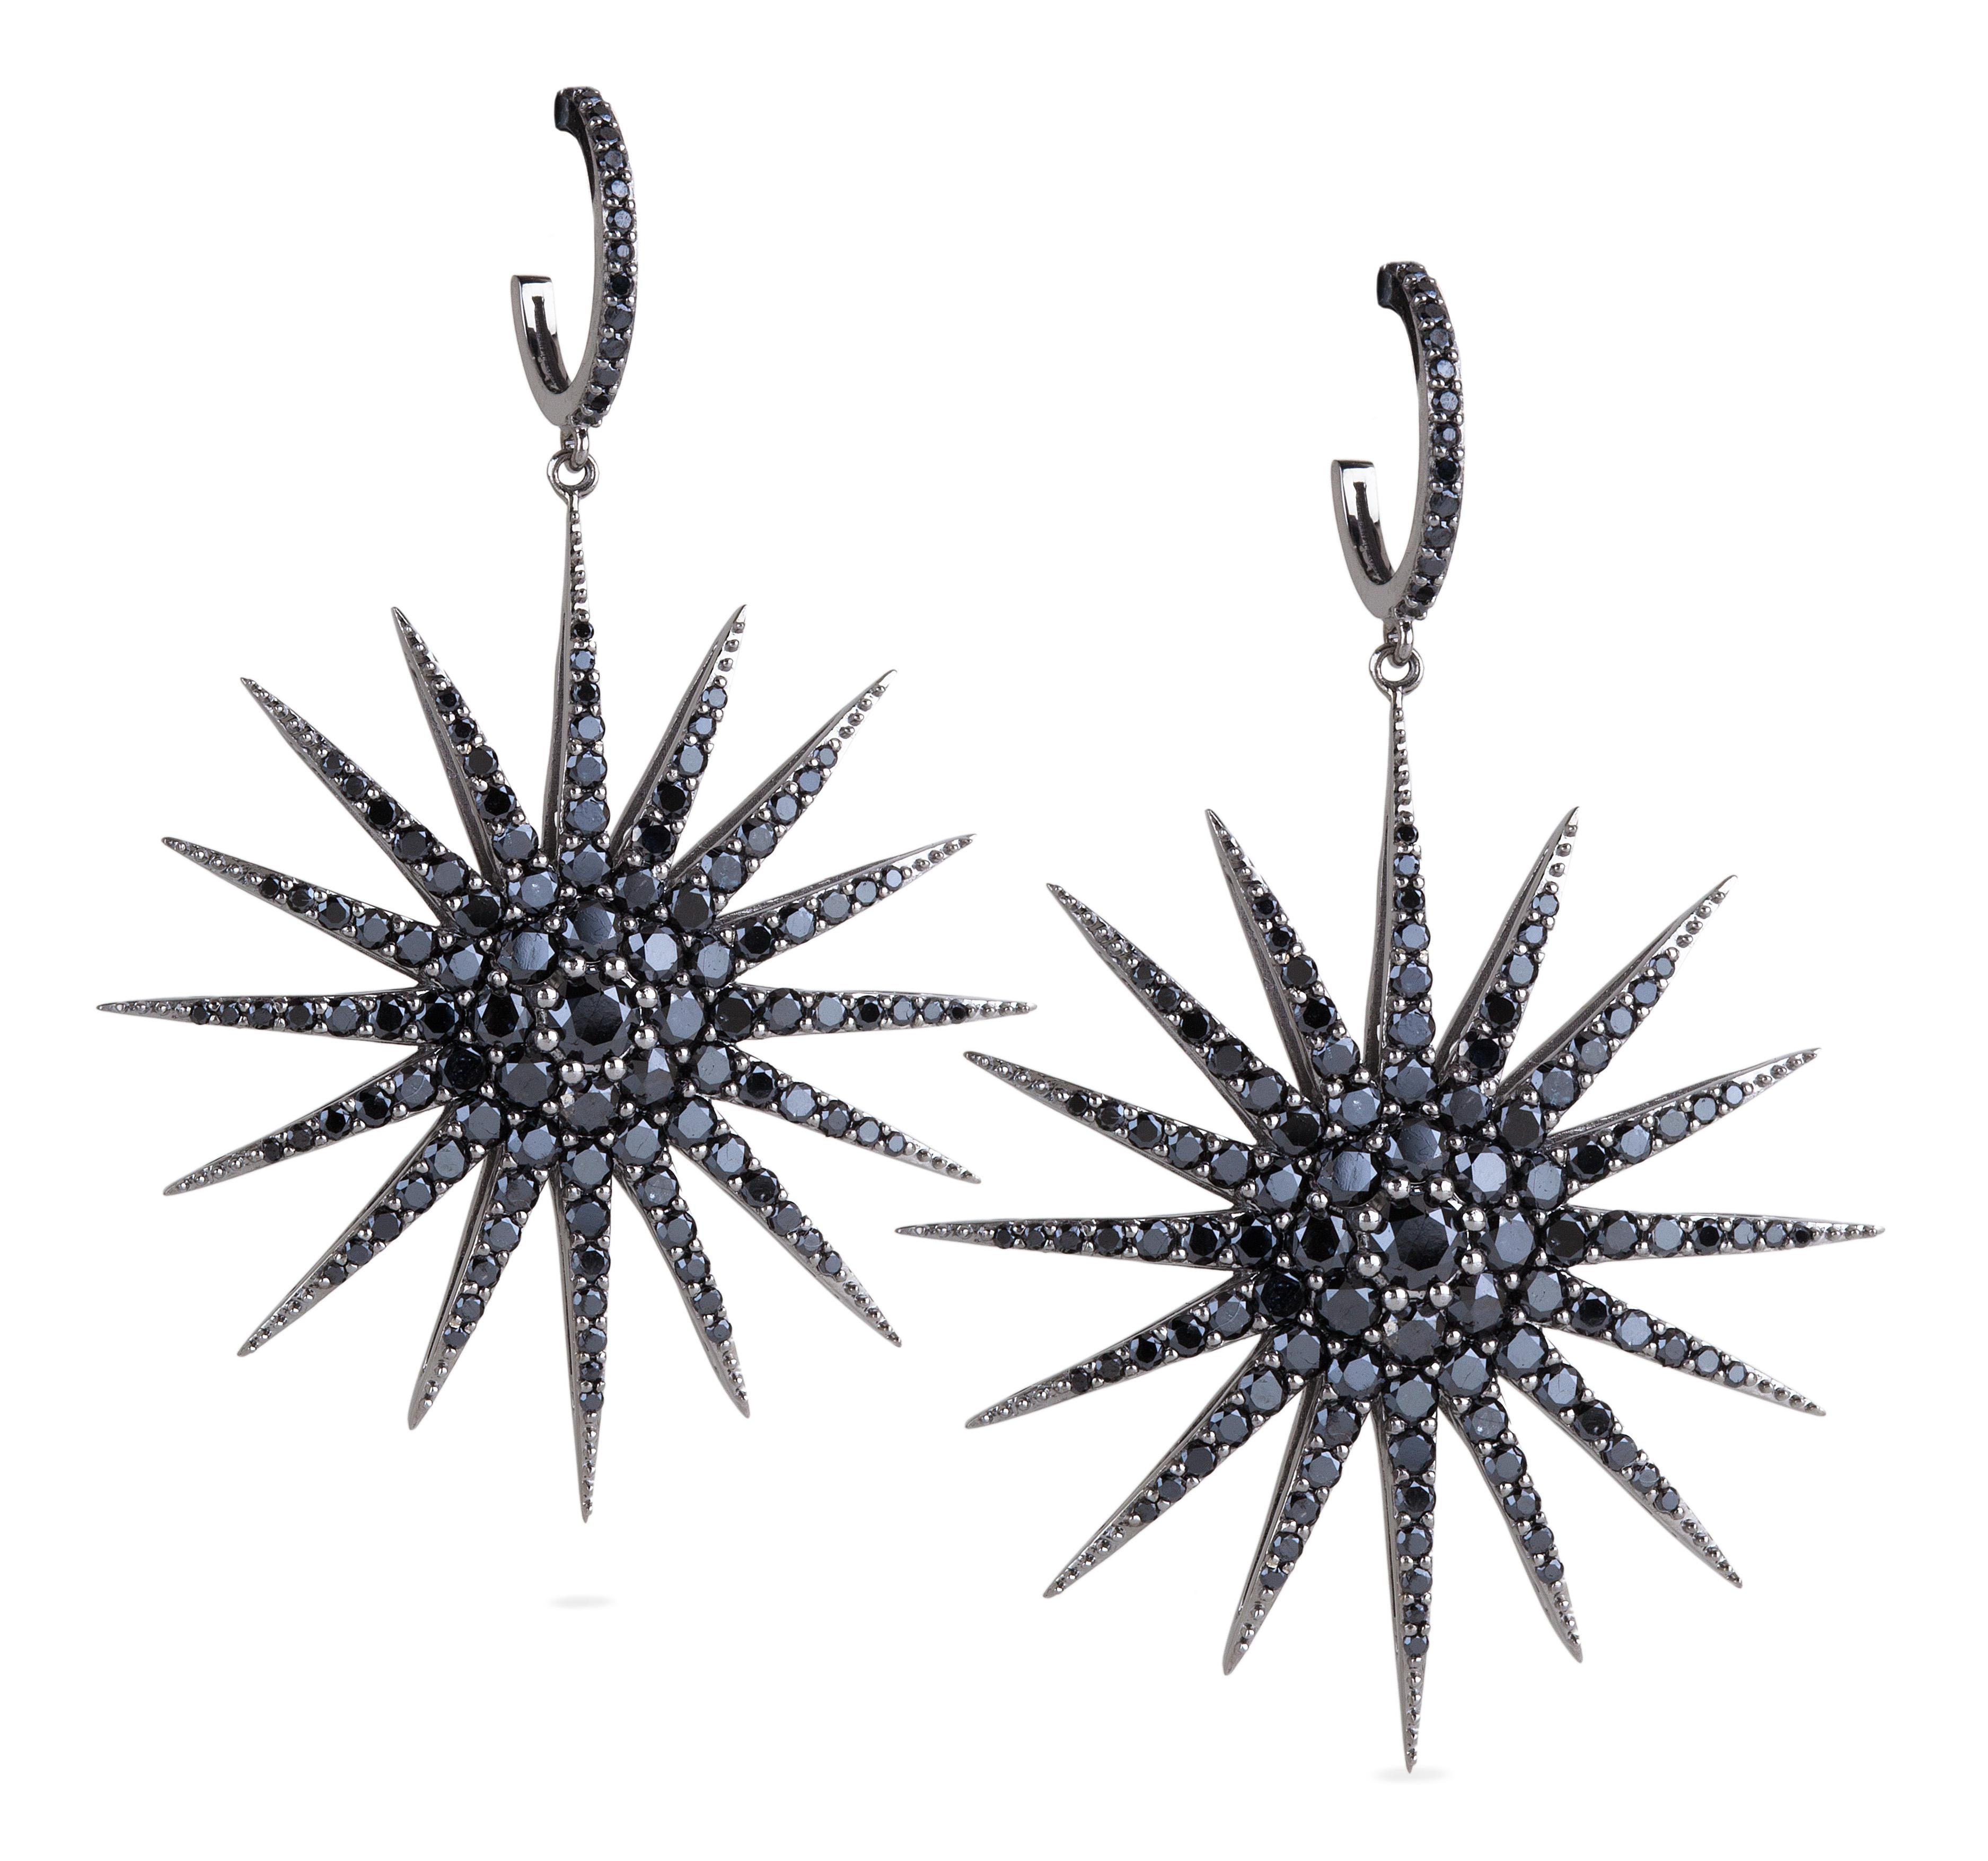 Bochic Classic Star Schwarzer Diamant Ohrringe Set in 18 K Schwarzgold
Schwarze Diamanten - 6 Karat 
Die Ohrringe der Kollektion 